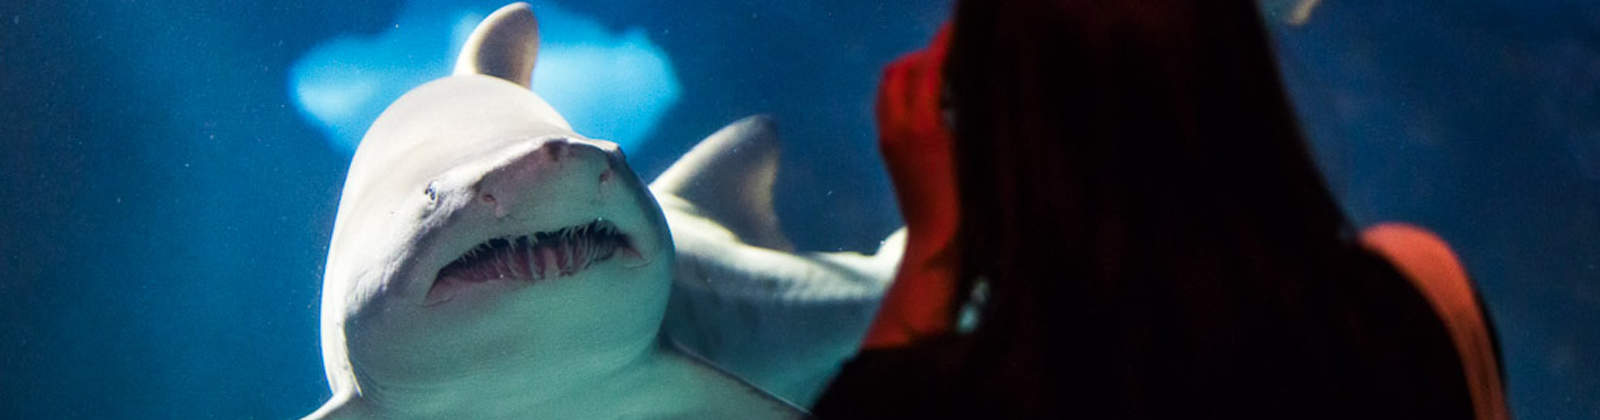 Closeup of Woman Looking at Shark